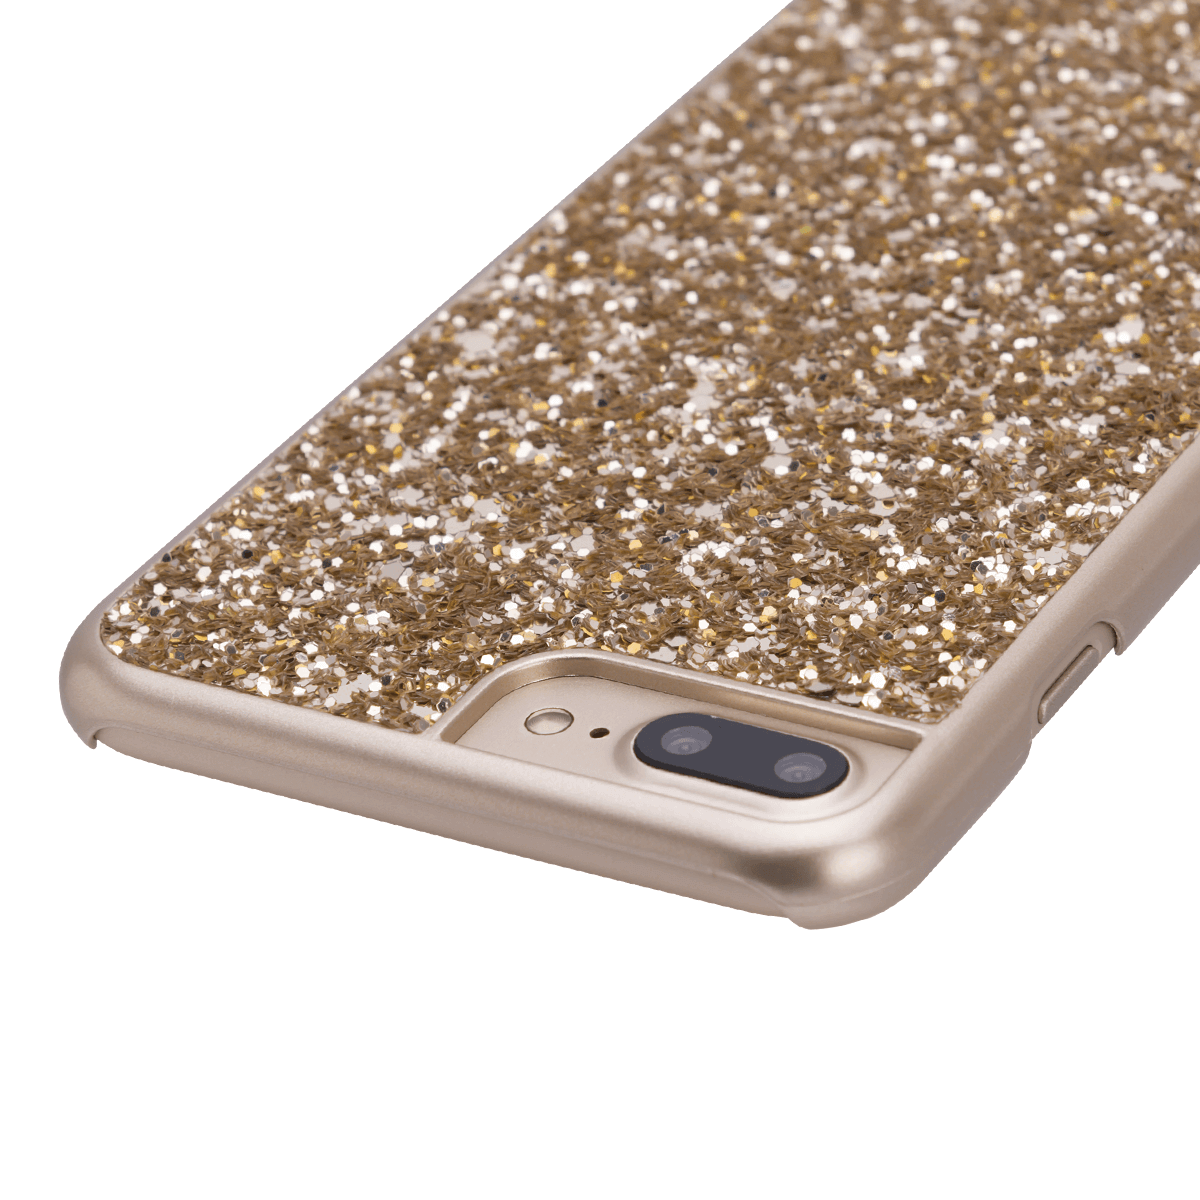 iPhone 7/8 Plus için spada Glitter Gold renk Kapak